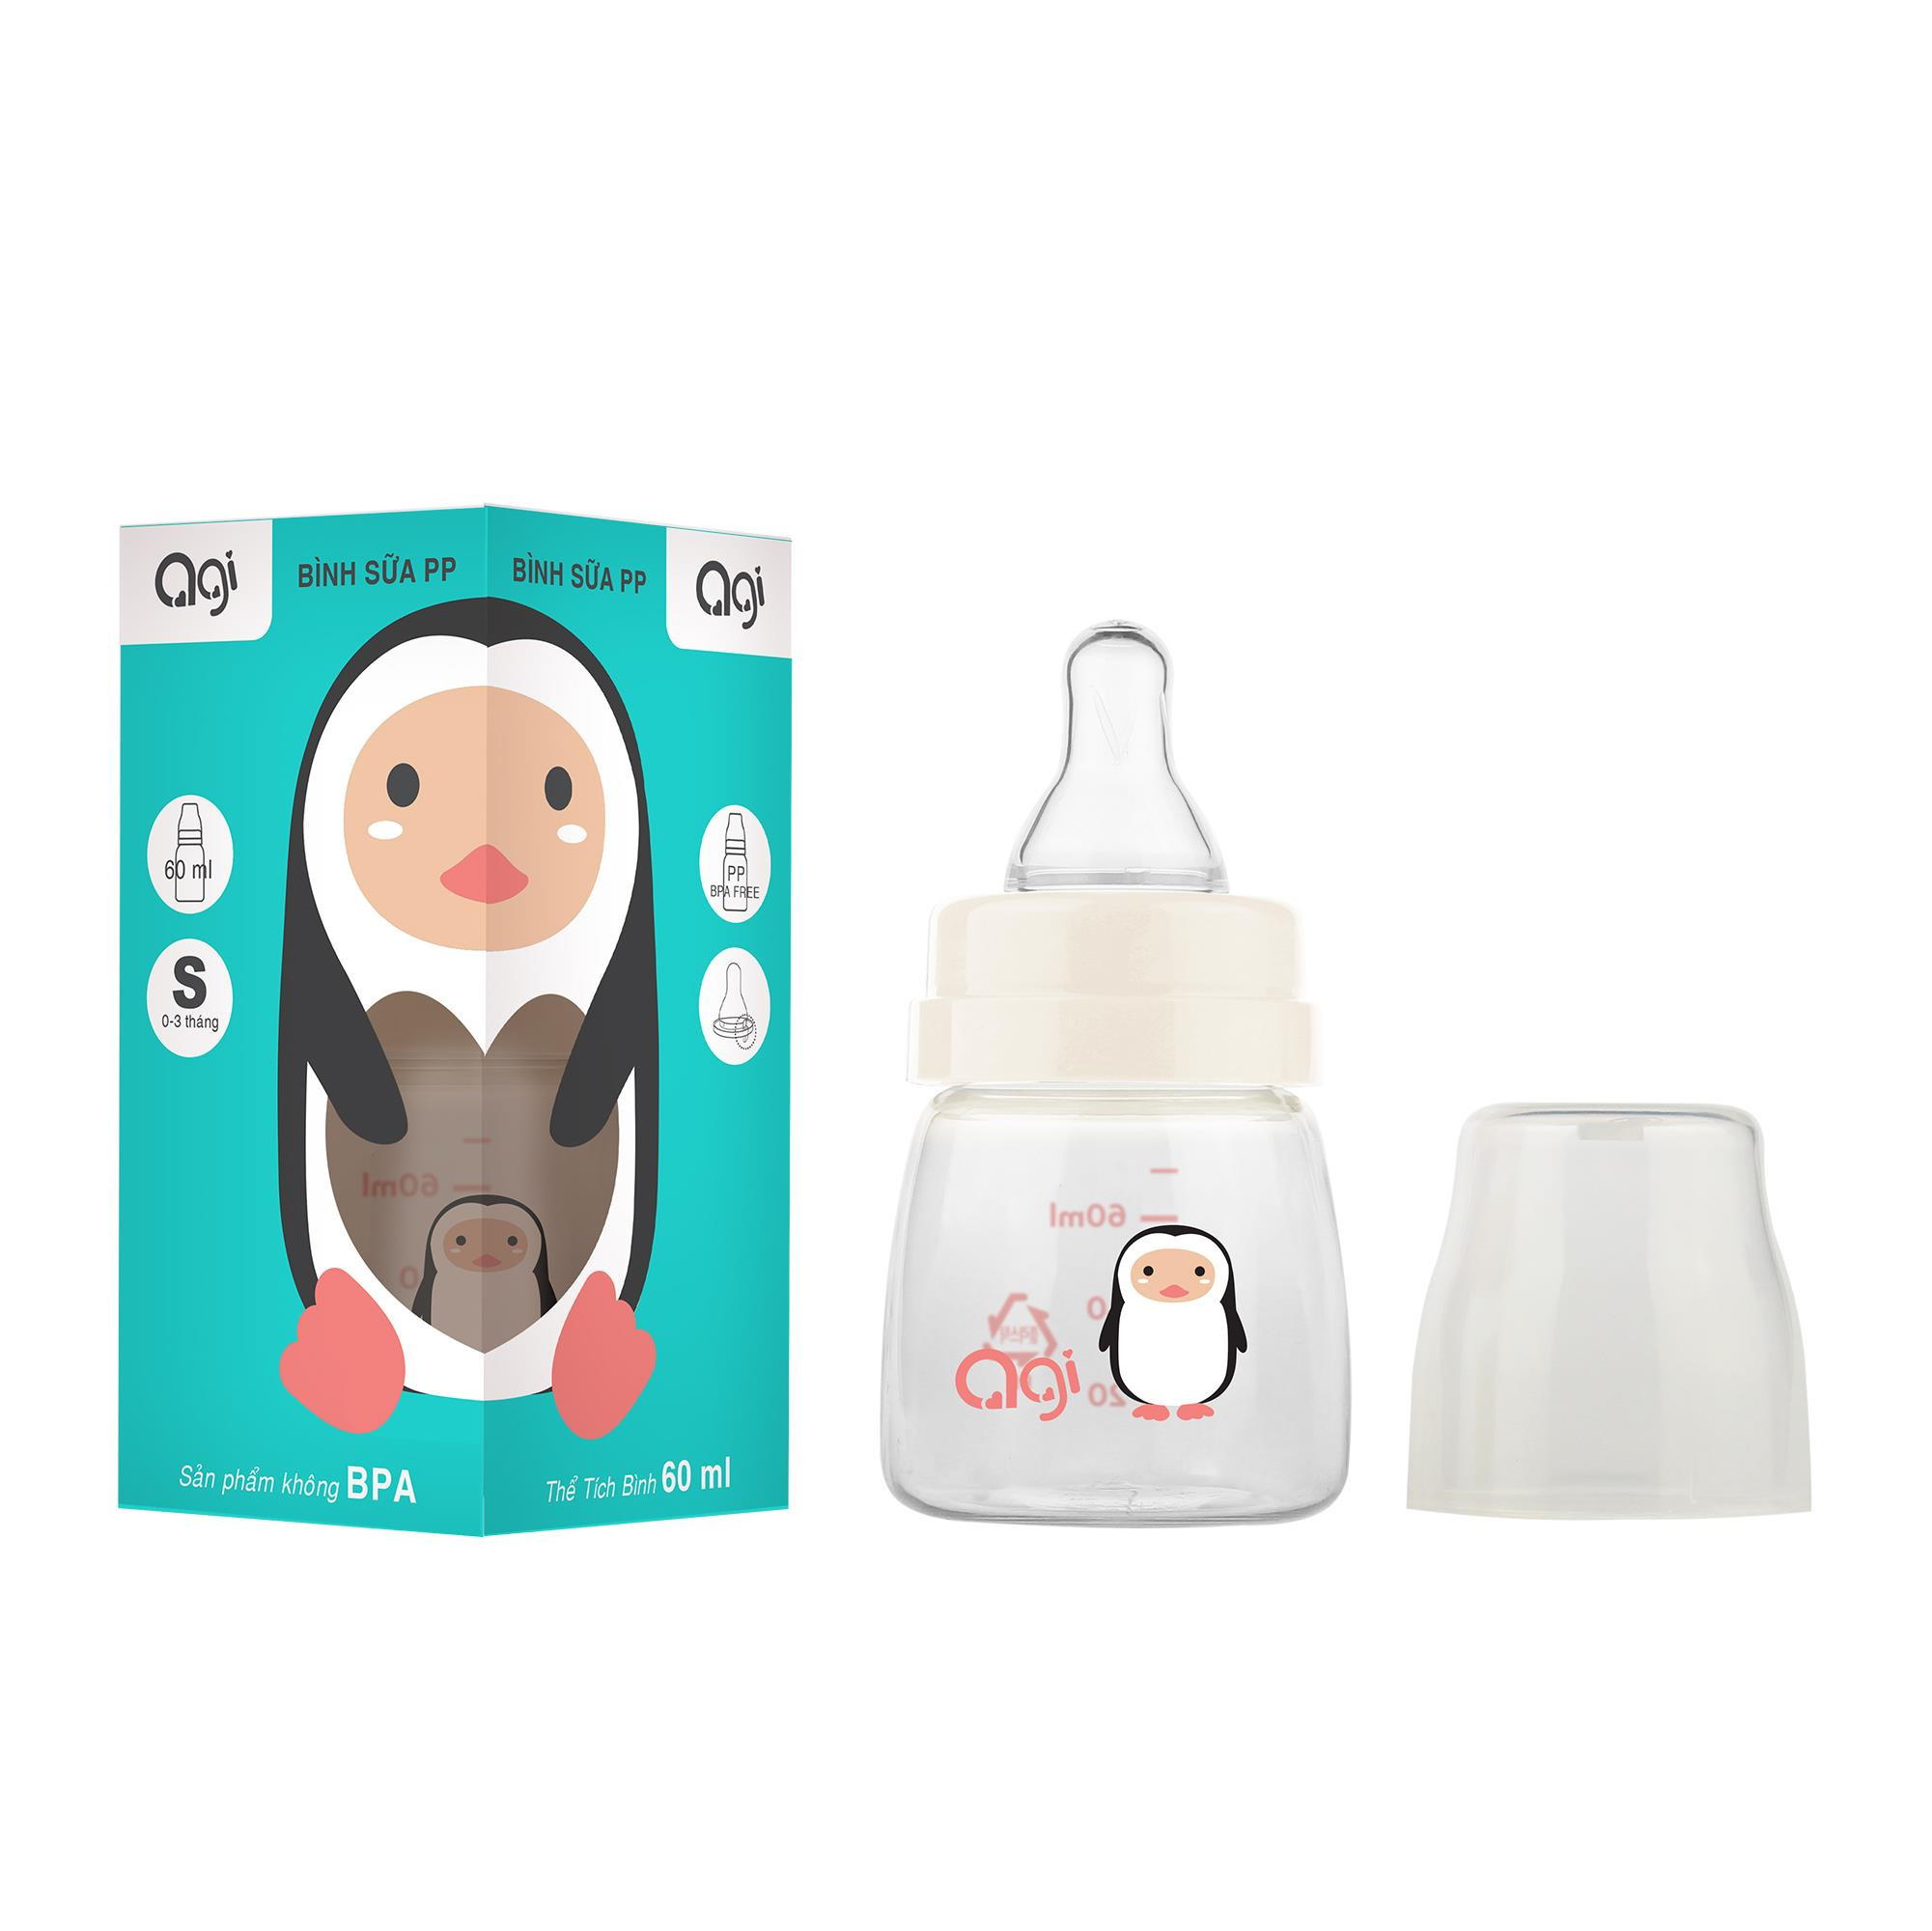 Bình sữa AGI 60ml nhựa PP không BPA an toàn cho bé